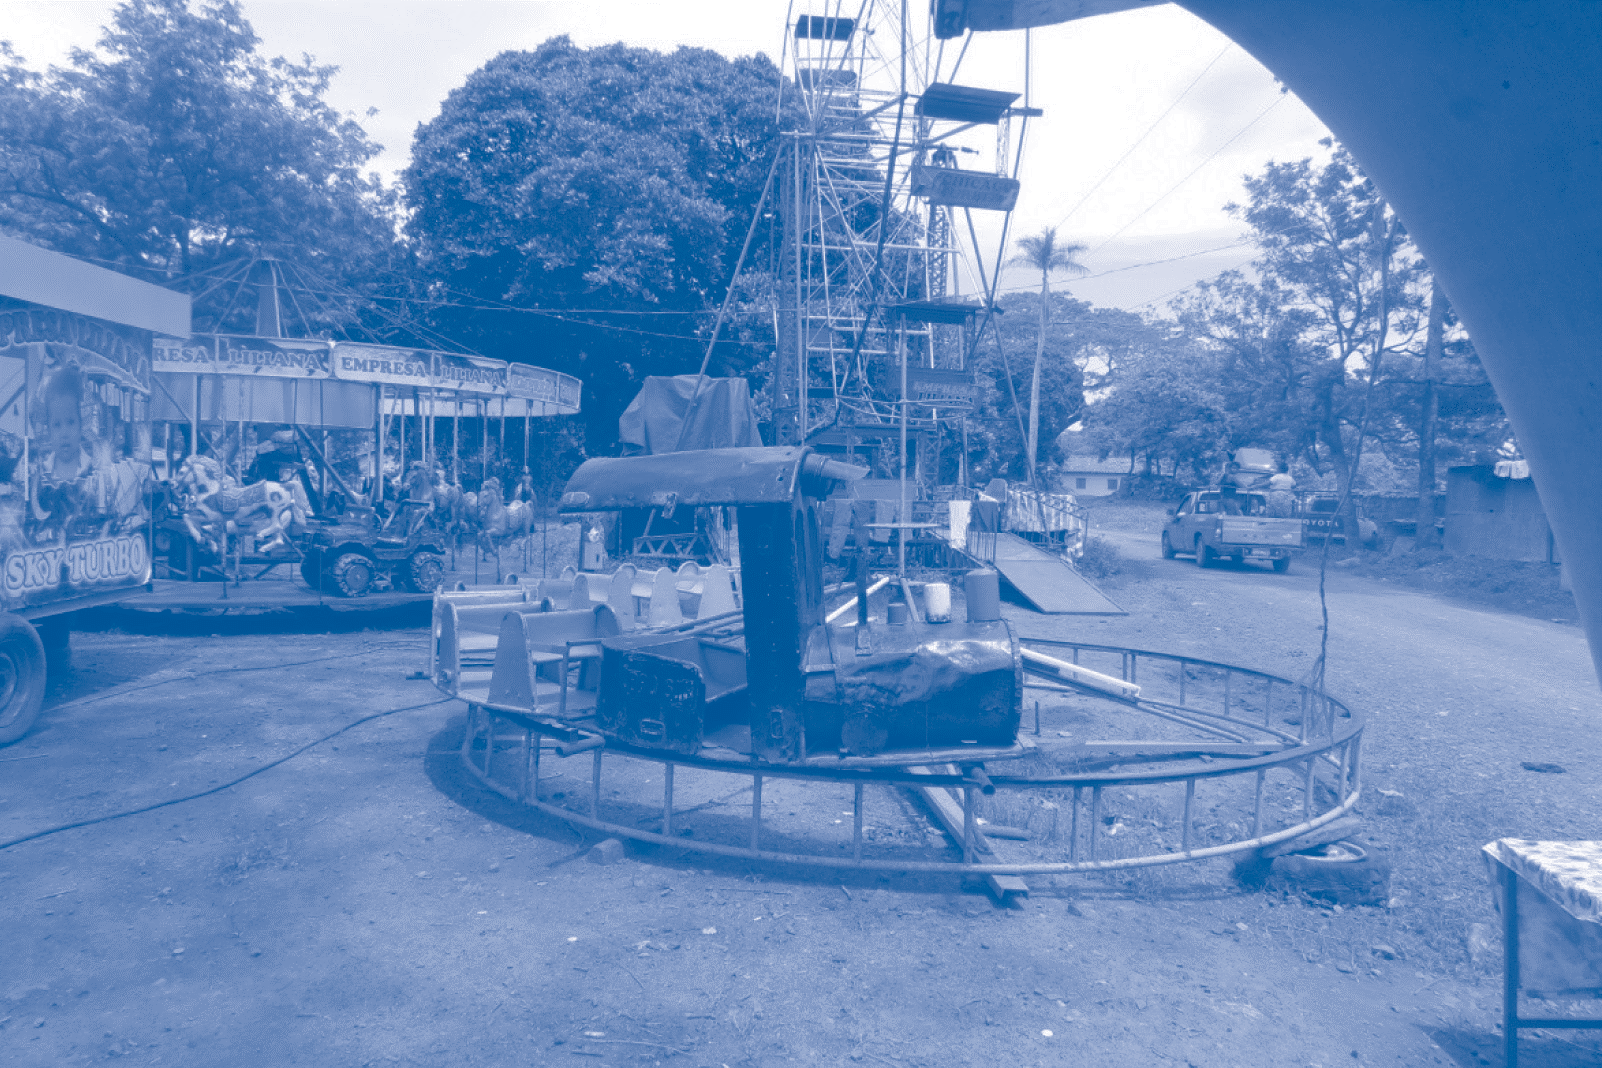 Vista
de los juegos mecánicos en los preparativos de la fiesta patronales de san
Juan, patrono del caserío San Juan Buenavista, antigua hacienda añilera del
mismo nombre.